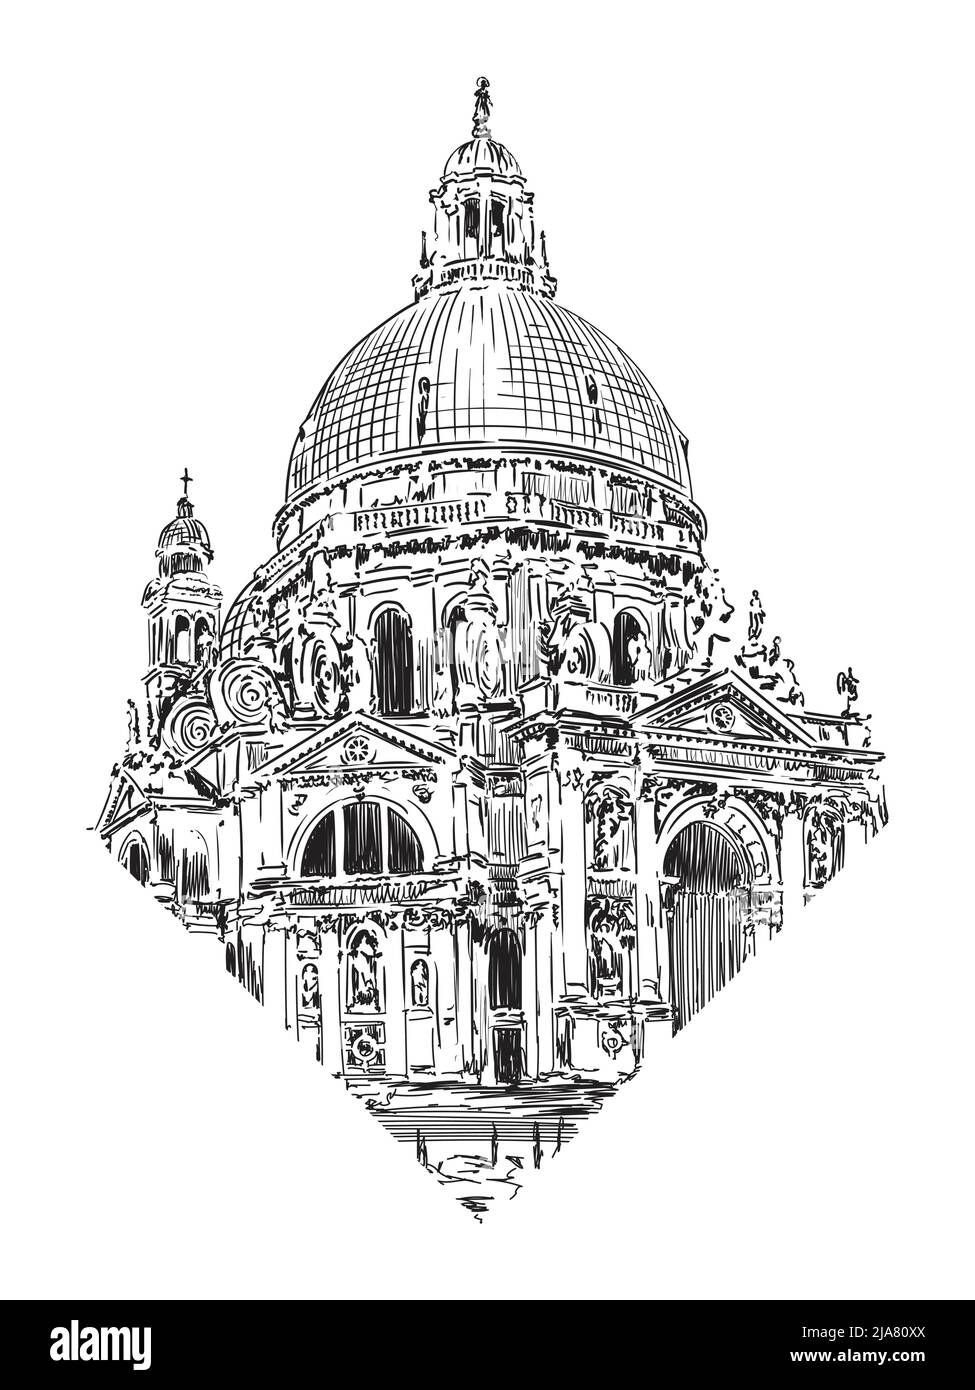 La cúpula de la catedral en el estilo clásico con arcos, estatuas y relojes. Croquis sobre un fondo beige. Ilustración del Vector